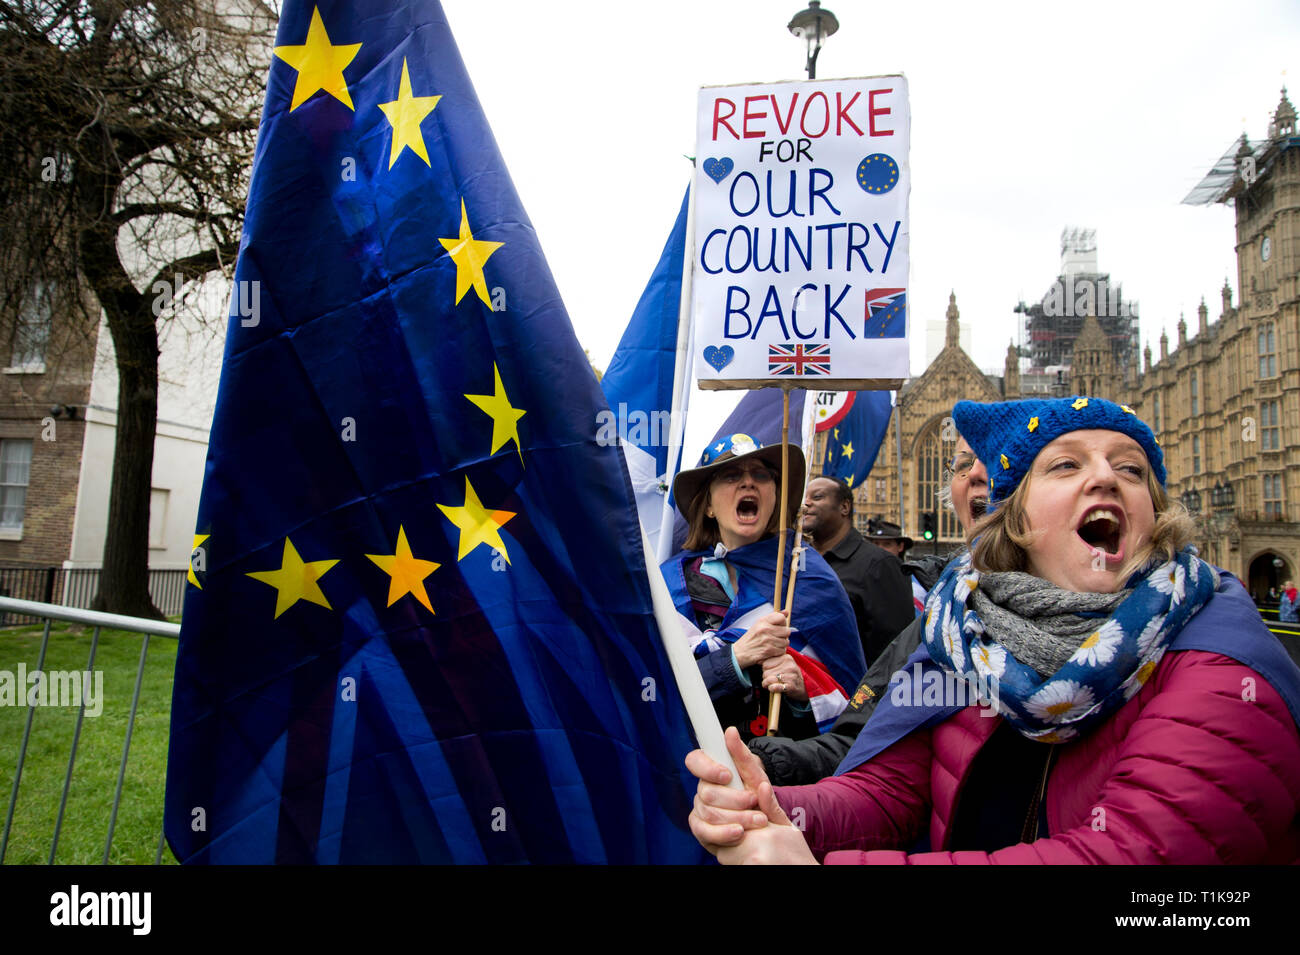 Londra, Regno Unito. 27 Mar, 2019. 27 marzo 2019 Westminster, la Casa del Parlamento. Rimangono i manifestanti gridare "No Brexit' e una donna, Helen, detiene una targhetta dicendo "revocare per il nostro paese". Credito: Jenny Matthews/Alamy Live News Foto Stock